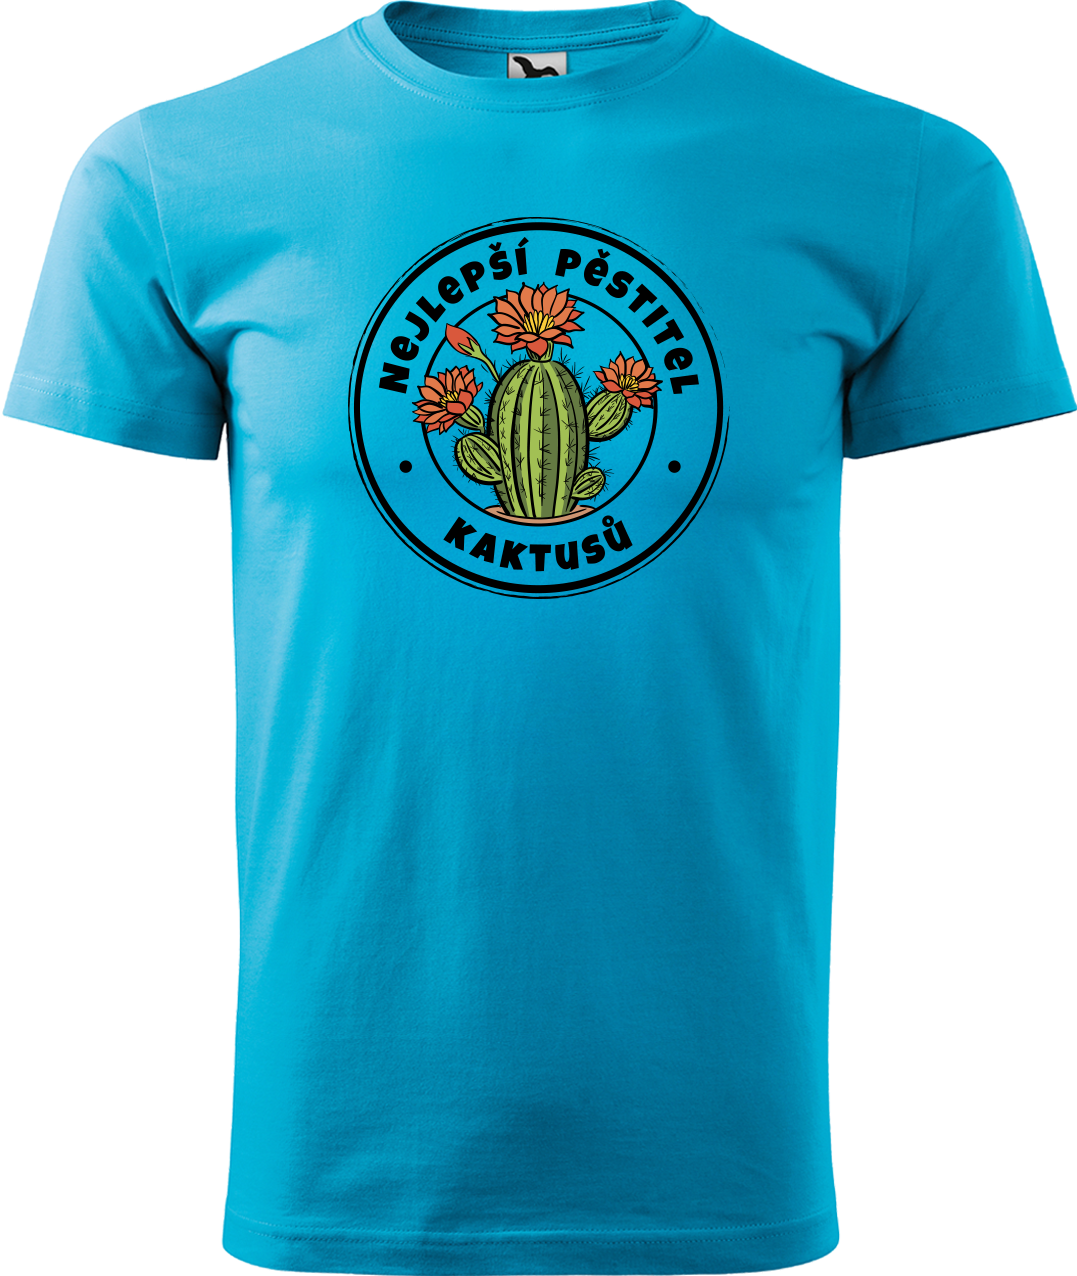 Tričko s kaktusem - Nejlepší pěstitel kaktusů Velikost: M, Barva: Tyrkysová (44)